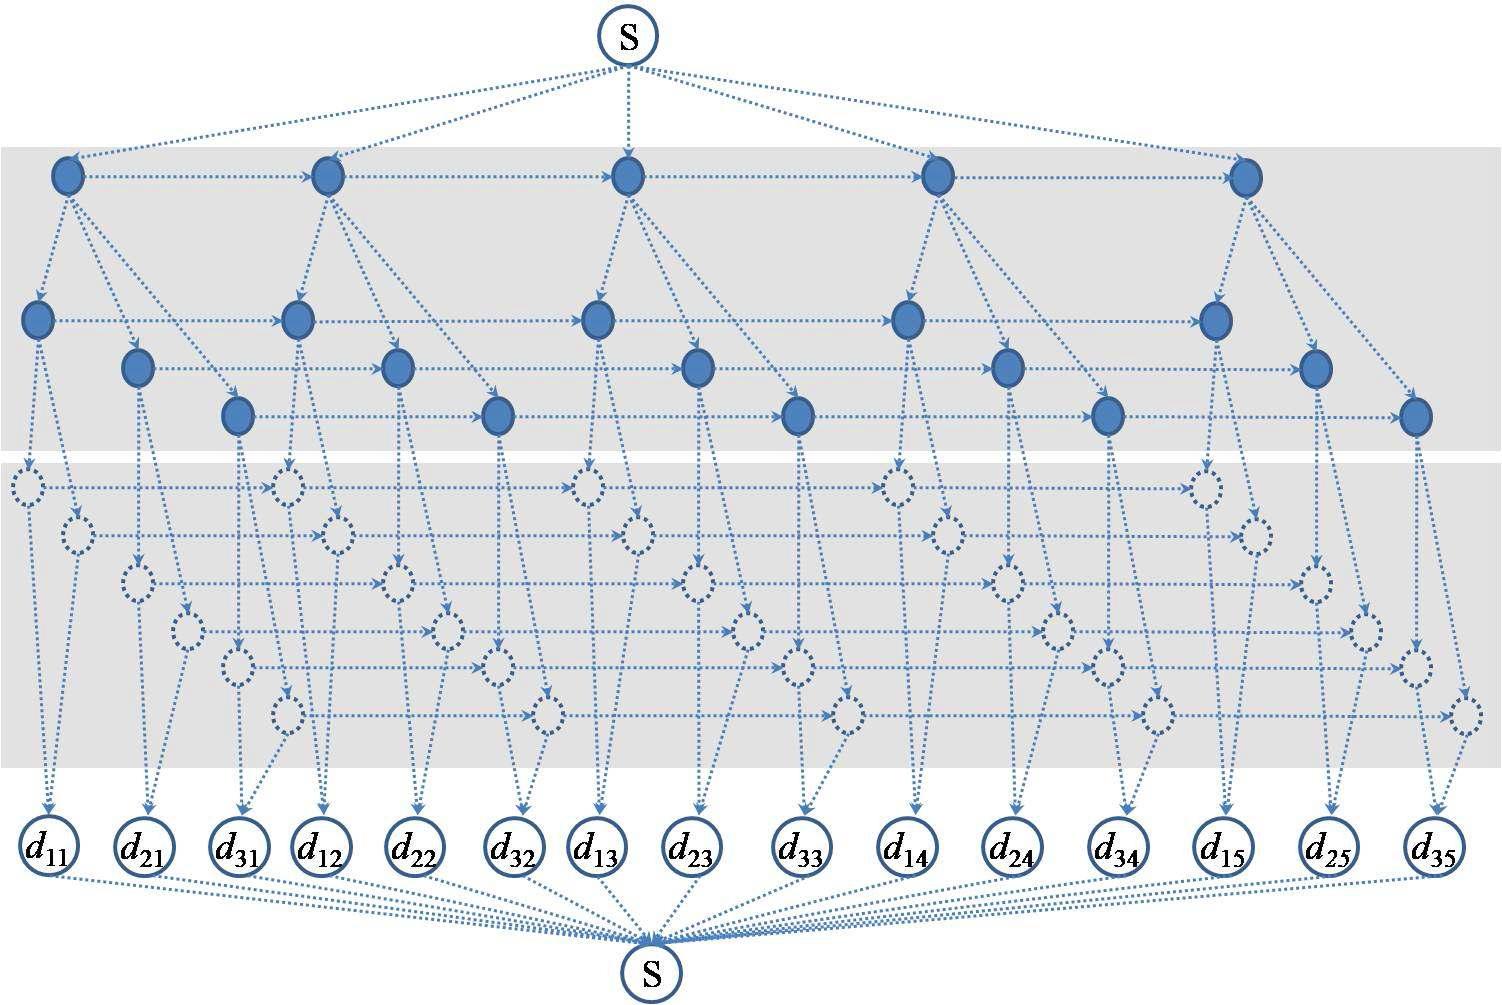 네트워크 표현 : 네트워크상에서의 물류 흐름